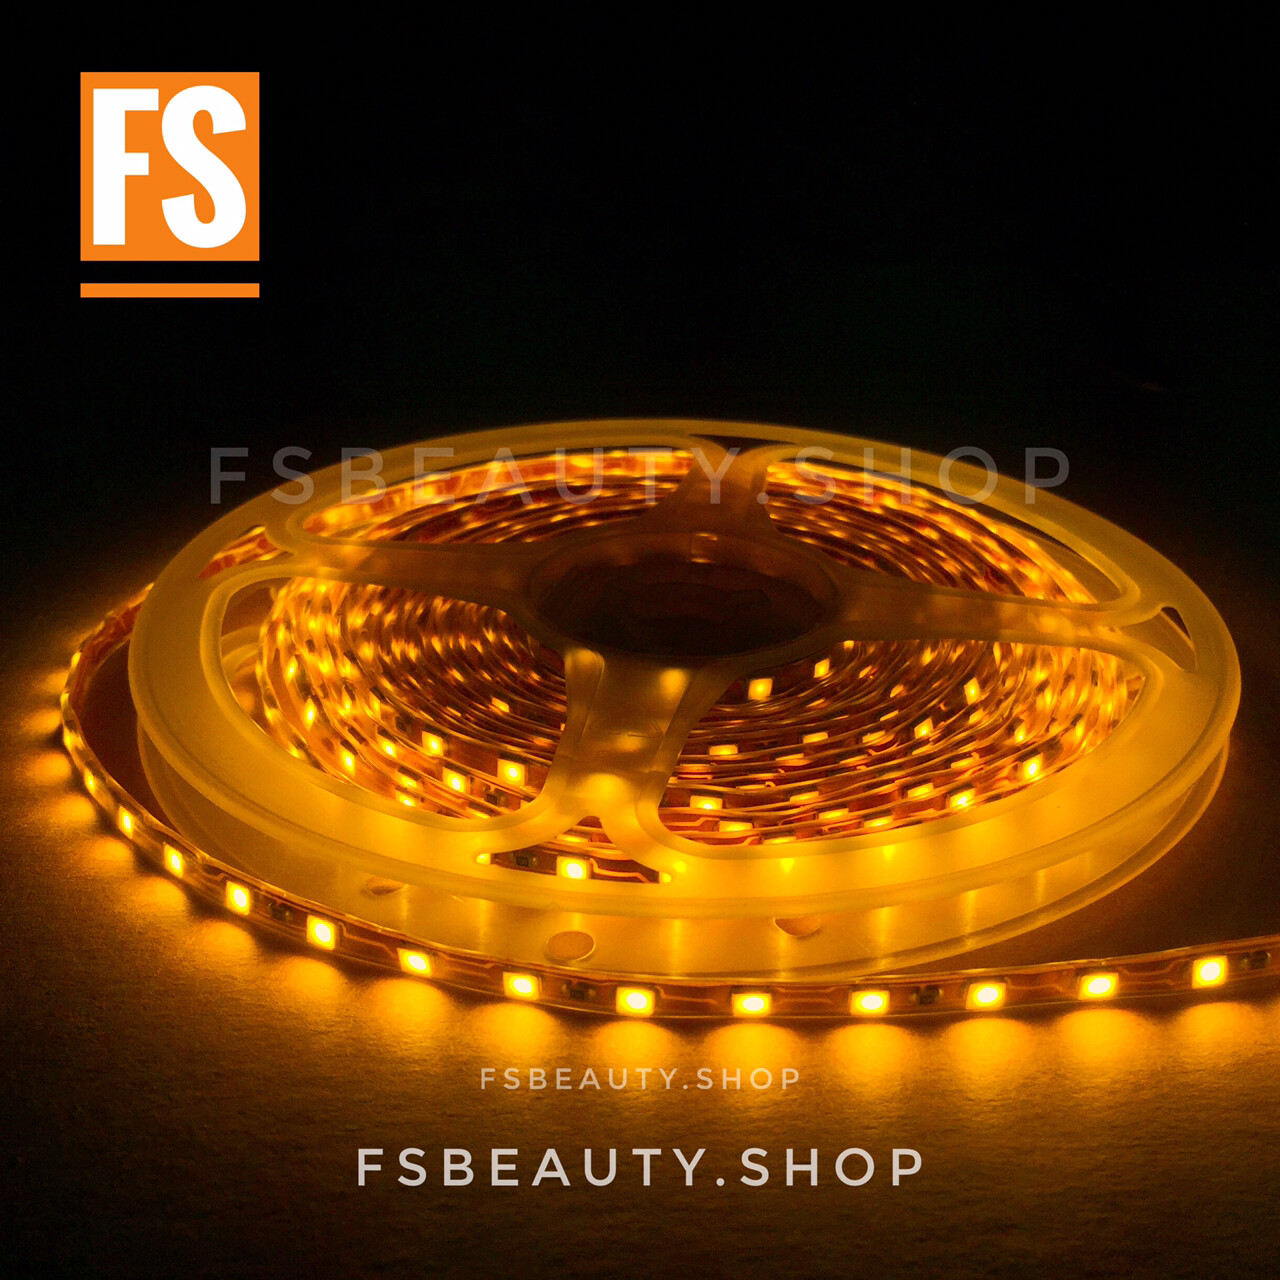 LEDไฟมะรุมม้วน ยาว 5 เมตร กันน้ำ เทสก่อนส่งทุกม้วน สี LEDไฟมะรุมม้วน ยาว 5 เมตร สีส้ม สี LEDไฟมะรุมม้วน ยาว 5 เมตร สีส้ม